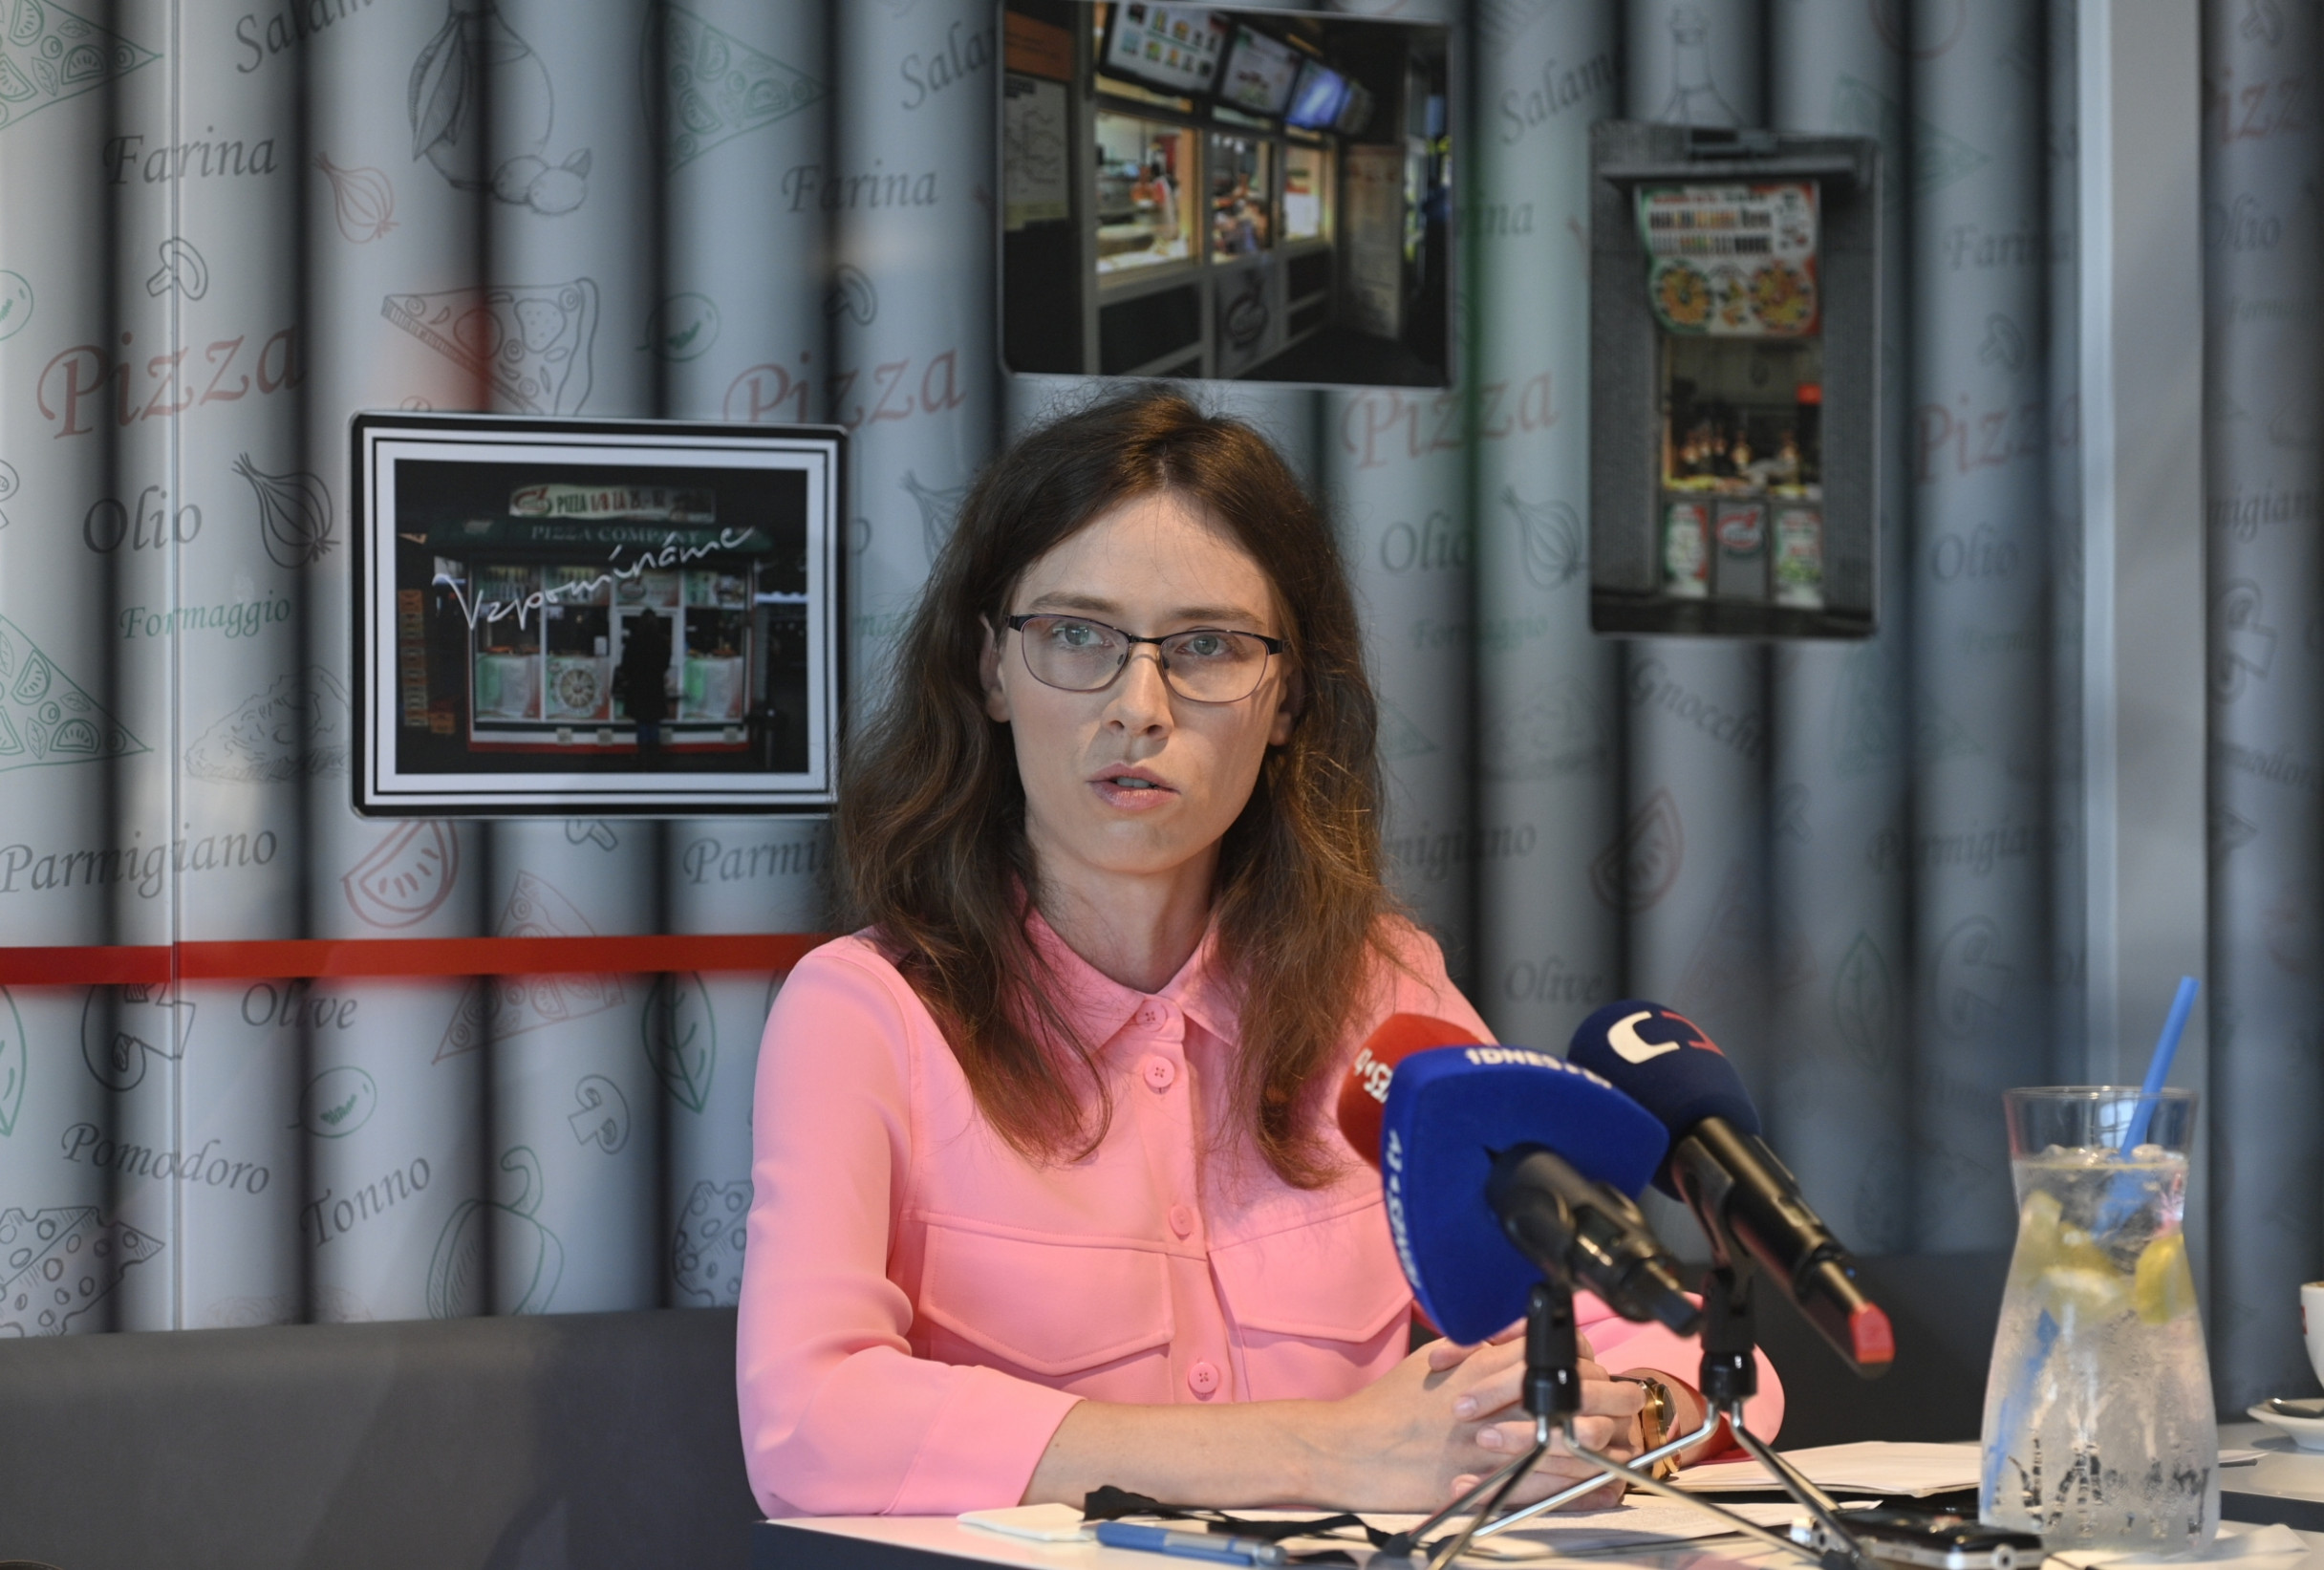 Poslanci odvolali Lipovskou z Rady ČT. Volný jednání proměnil v nedůstojnou frašku